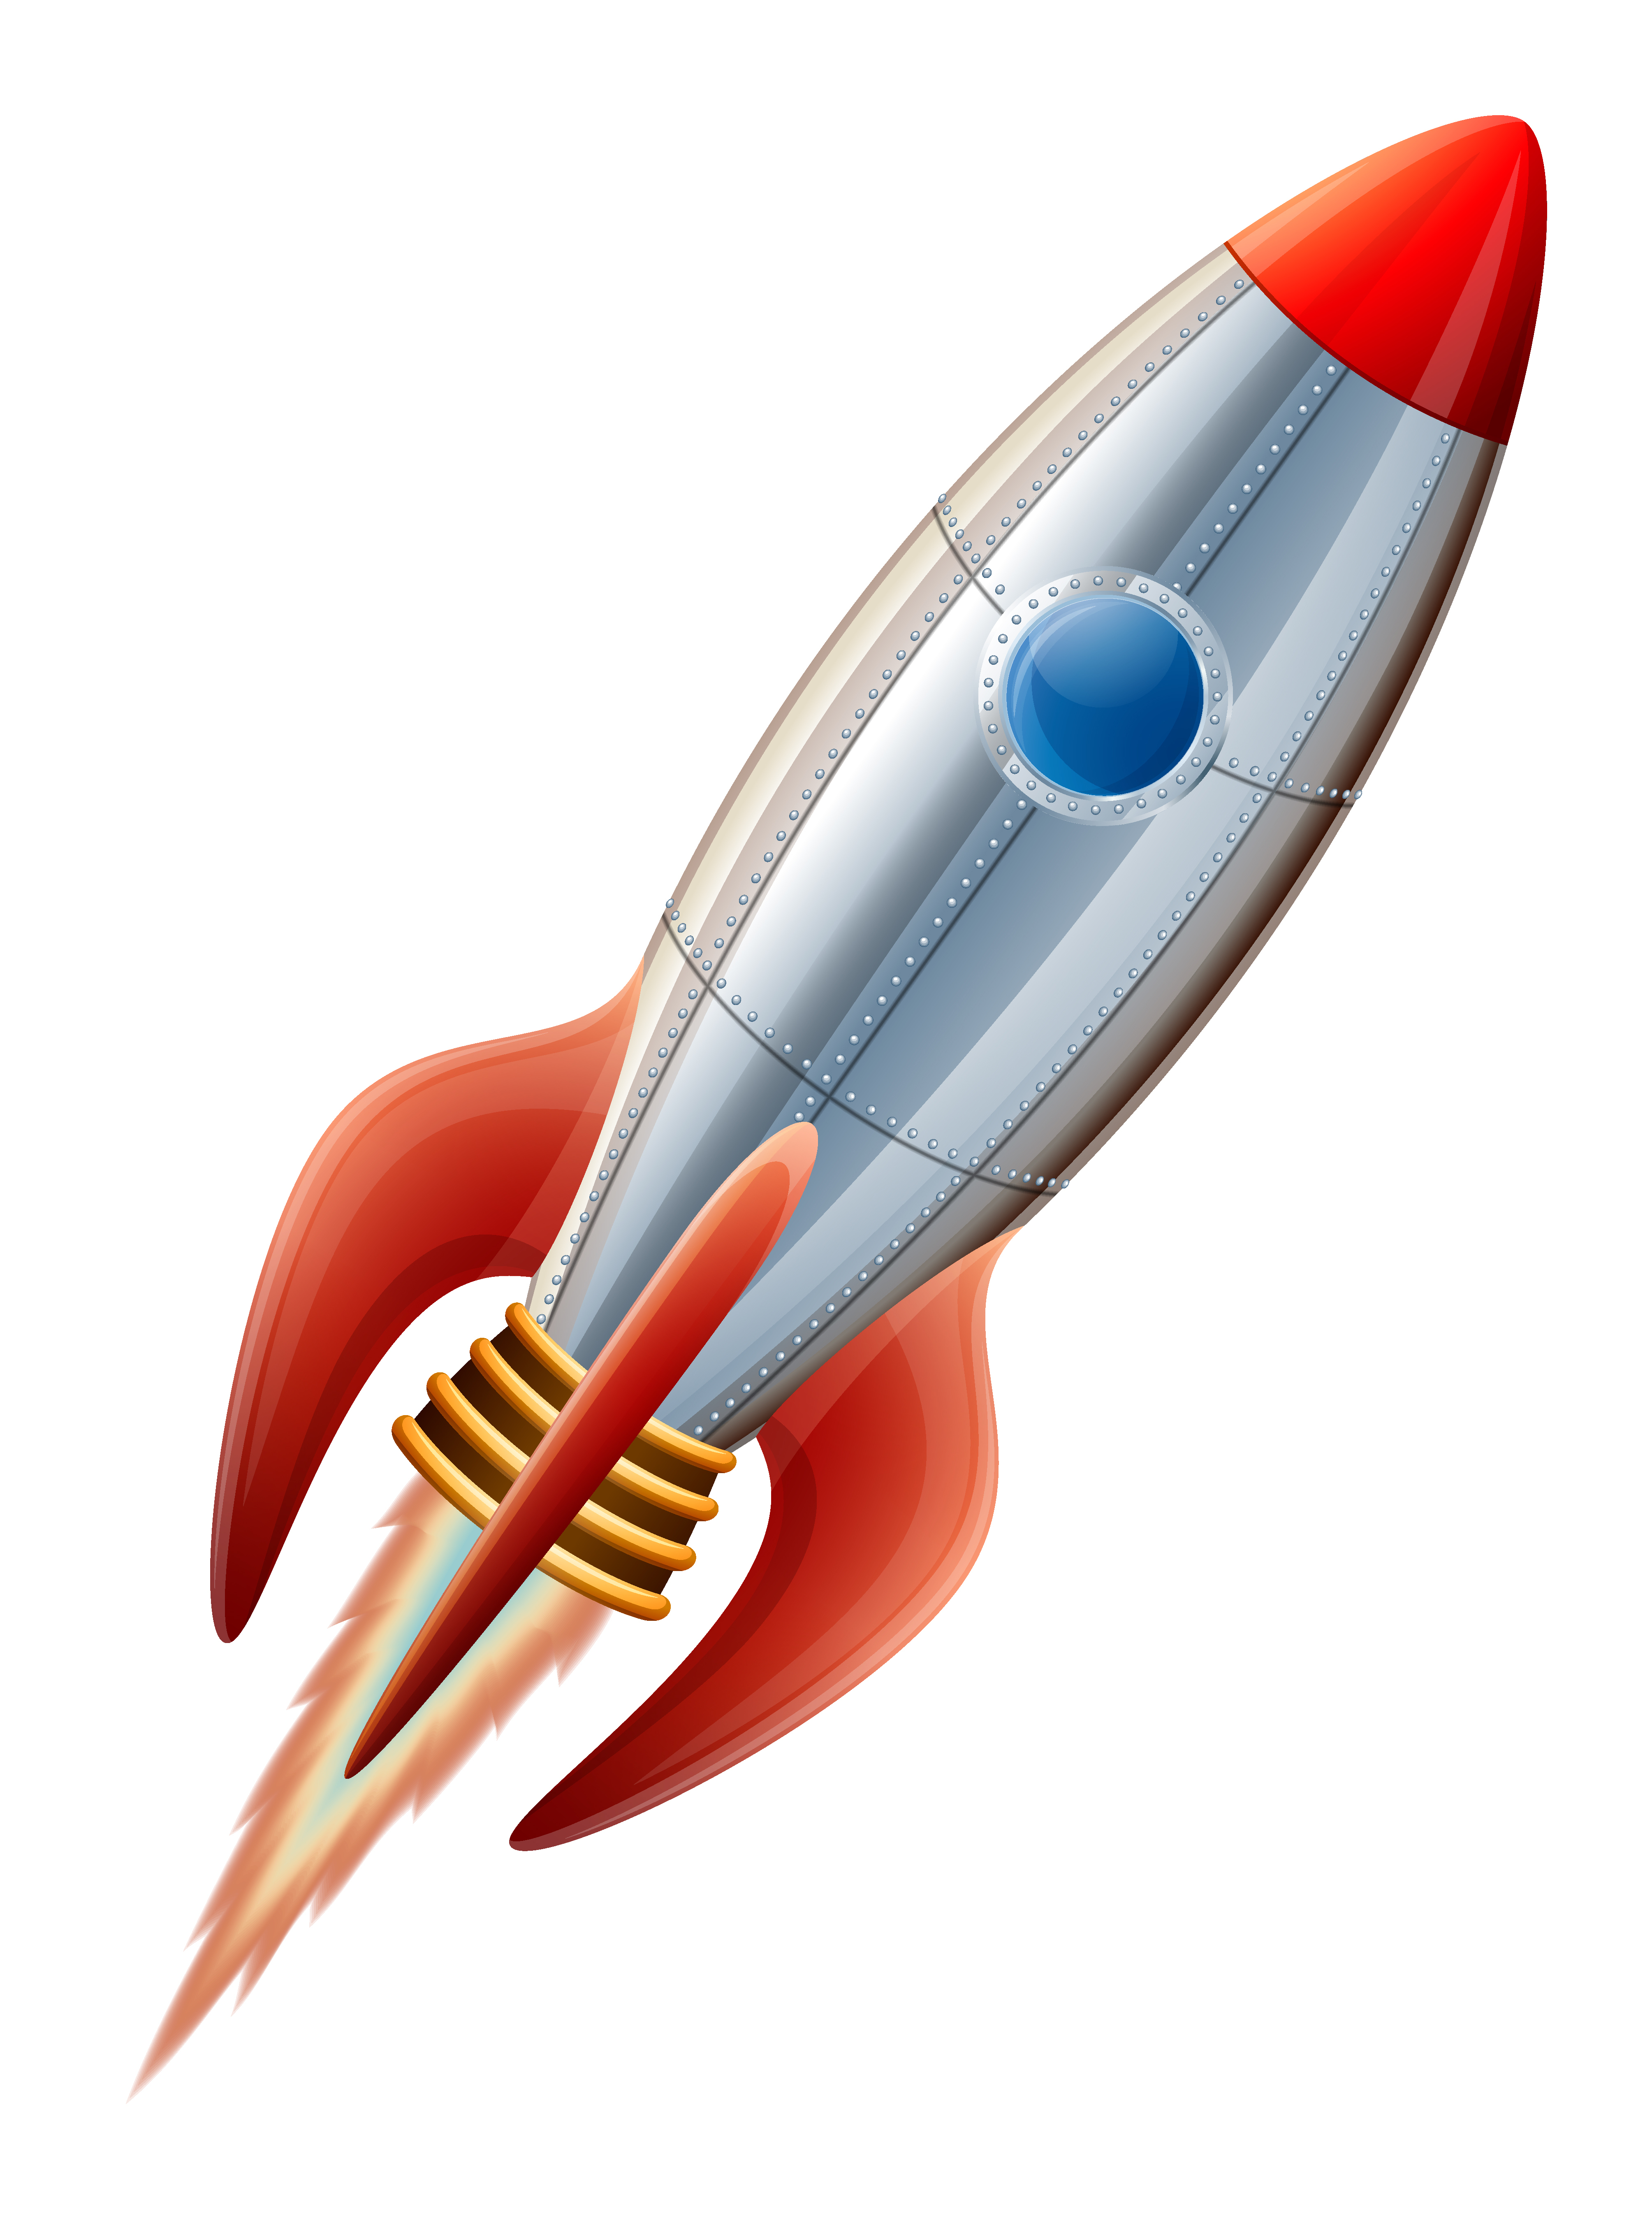 rocket ship clip art images - photo #30